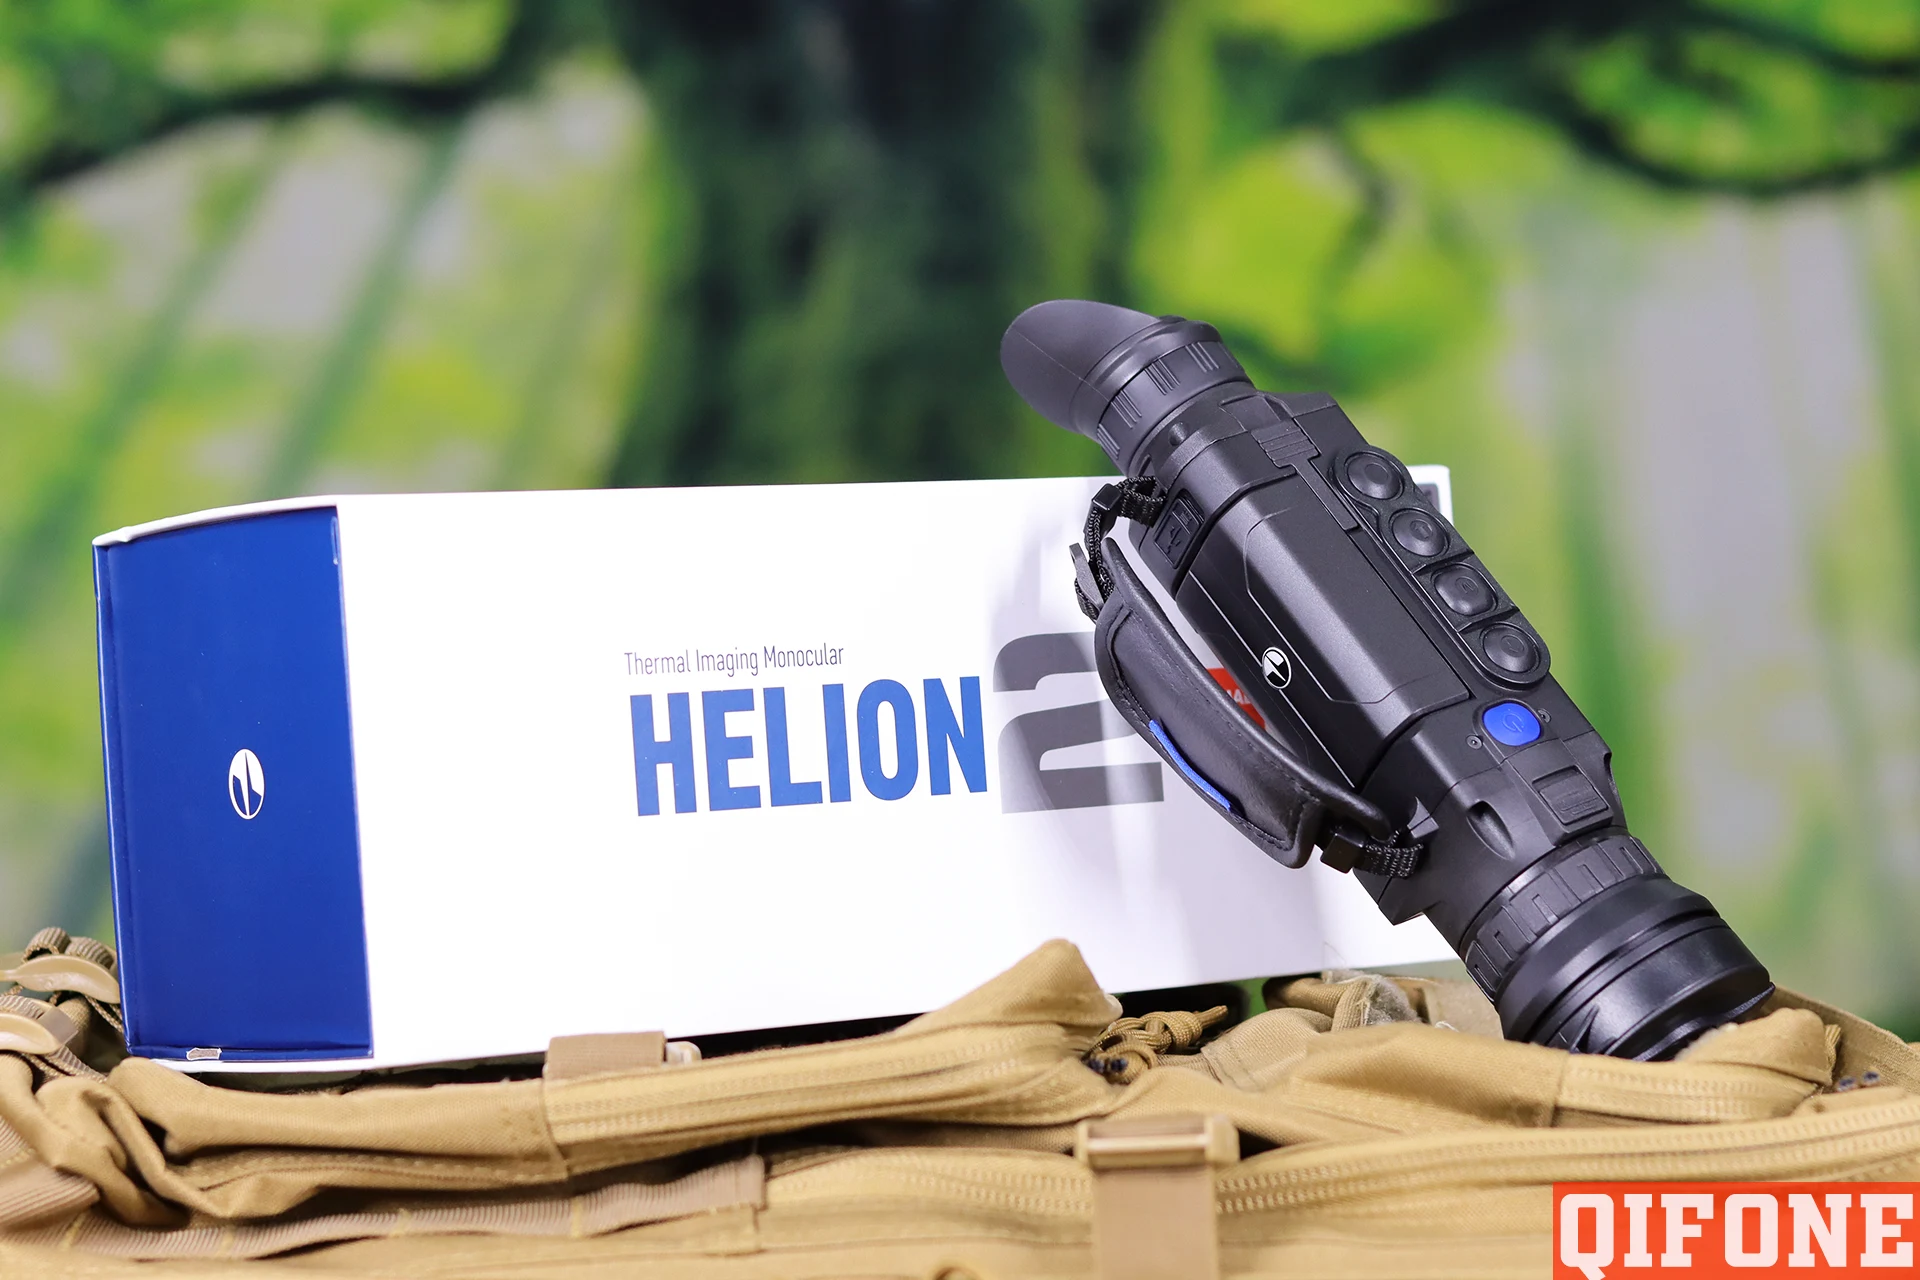 脉冲星成热像仪Helion 2 XP50 Pro #77439专业版高清搜救热像仪